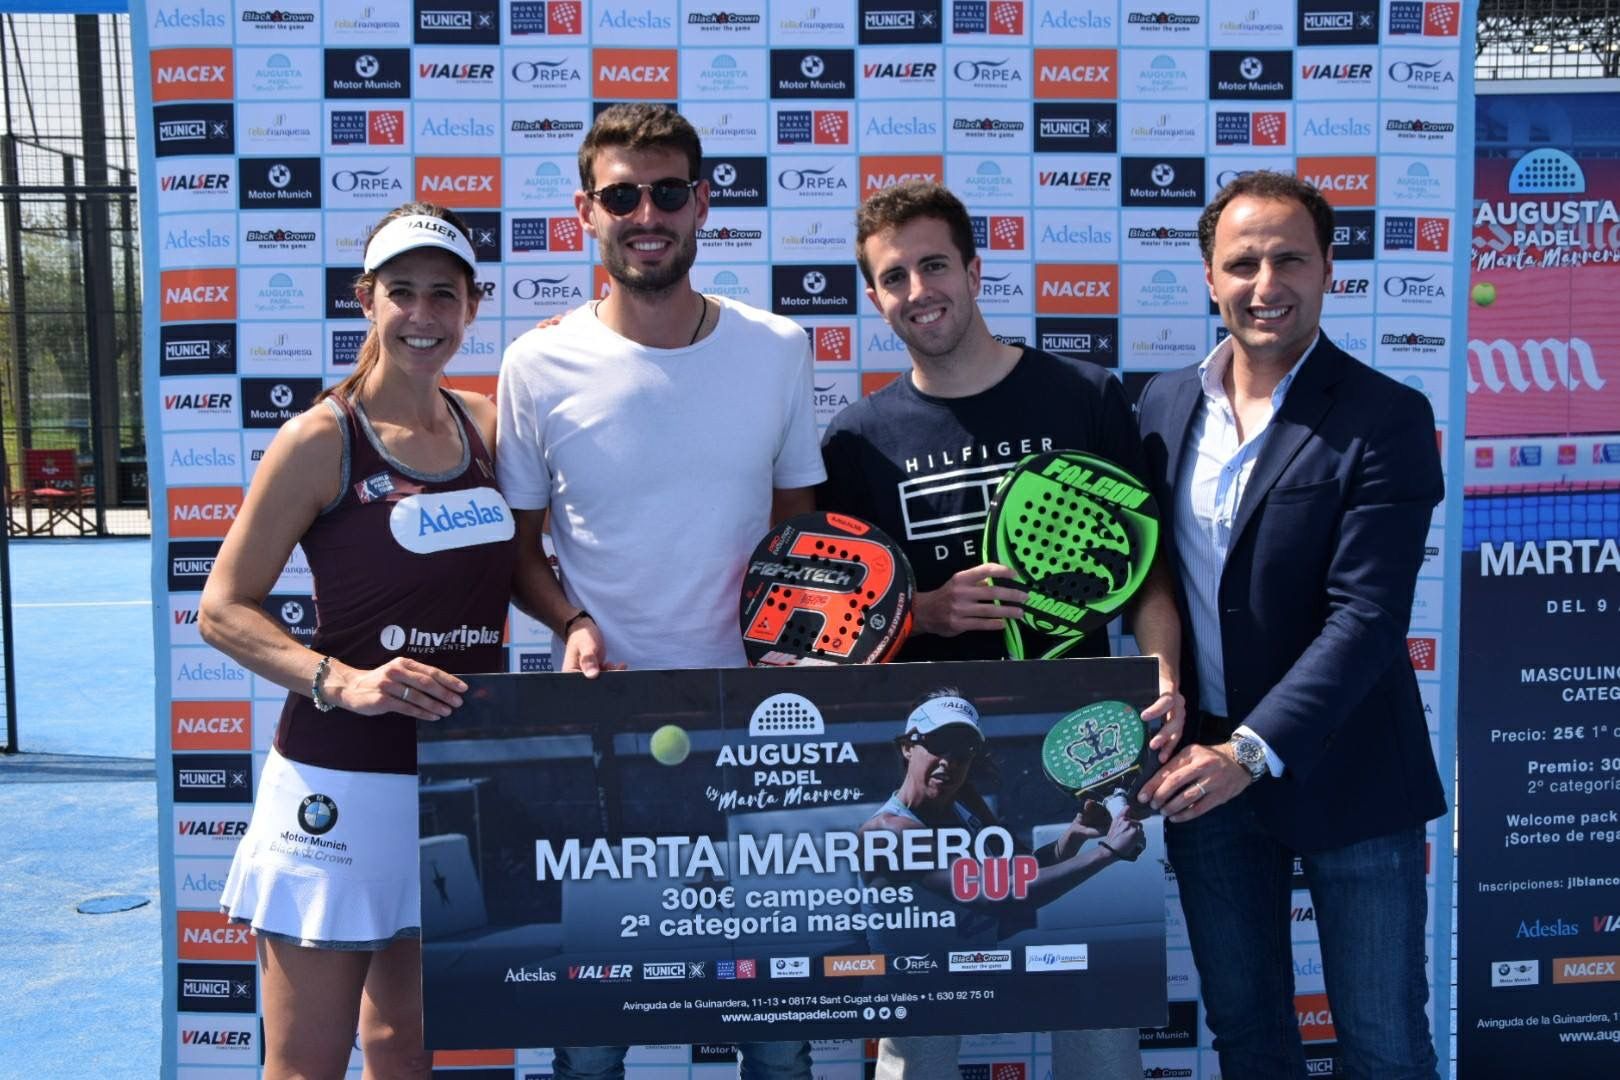  Els campions del torneig, amb Marta Marrero. FOTO: Augusta Padel By Marta Marrero